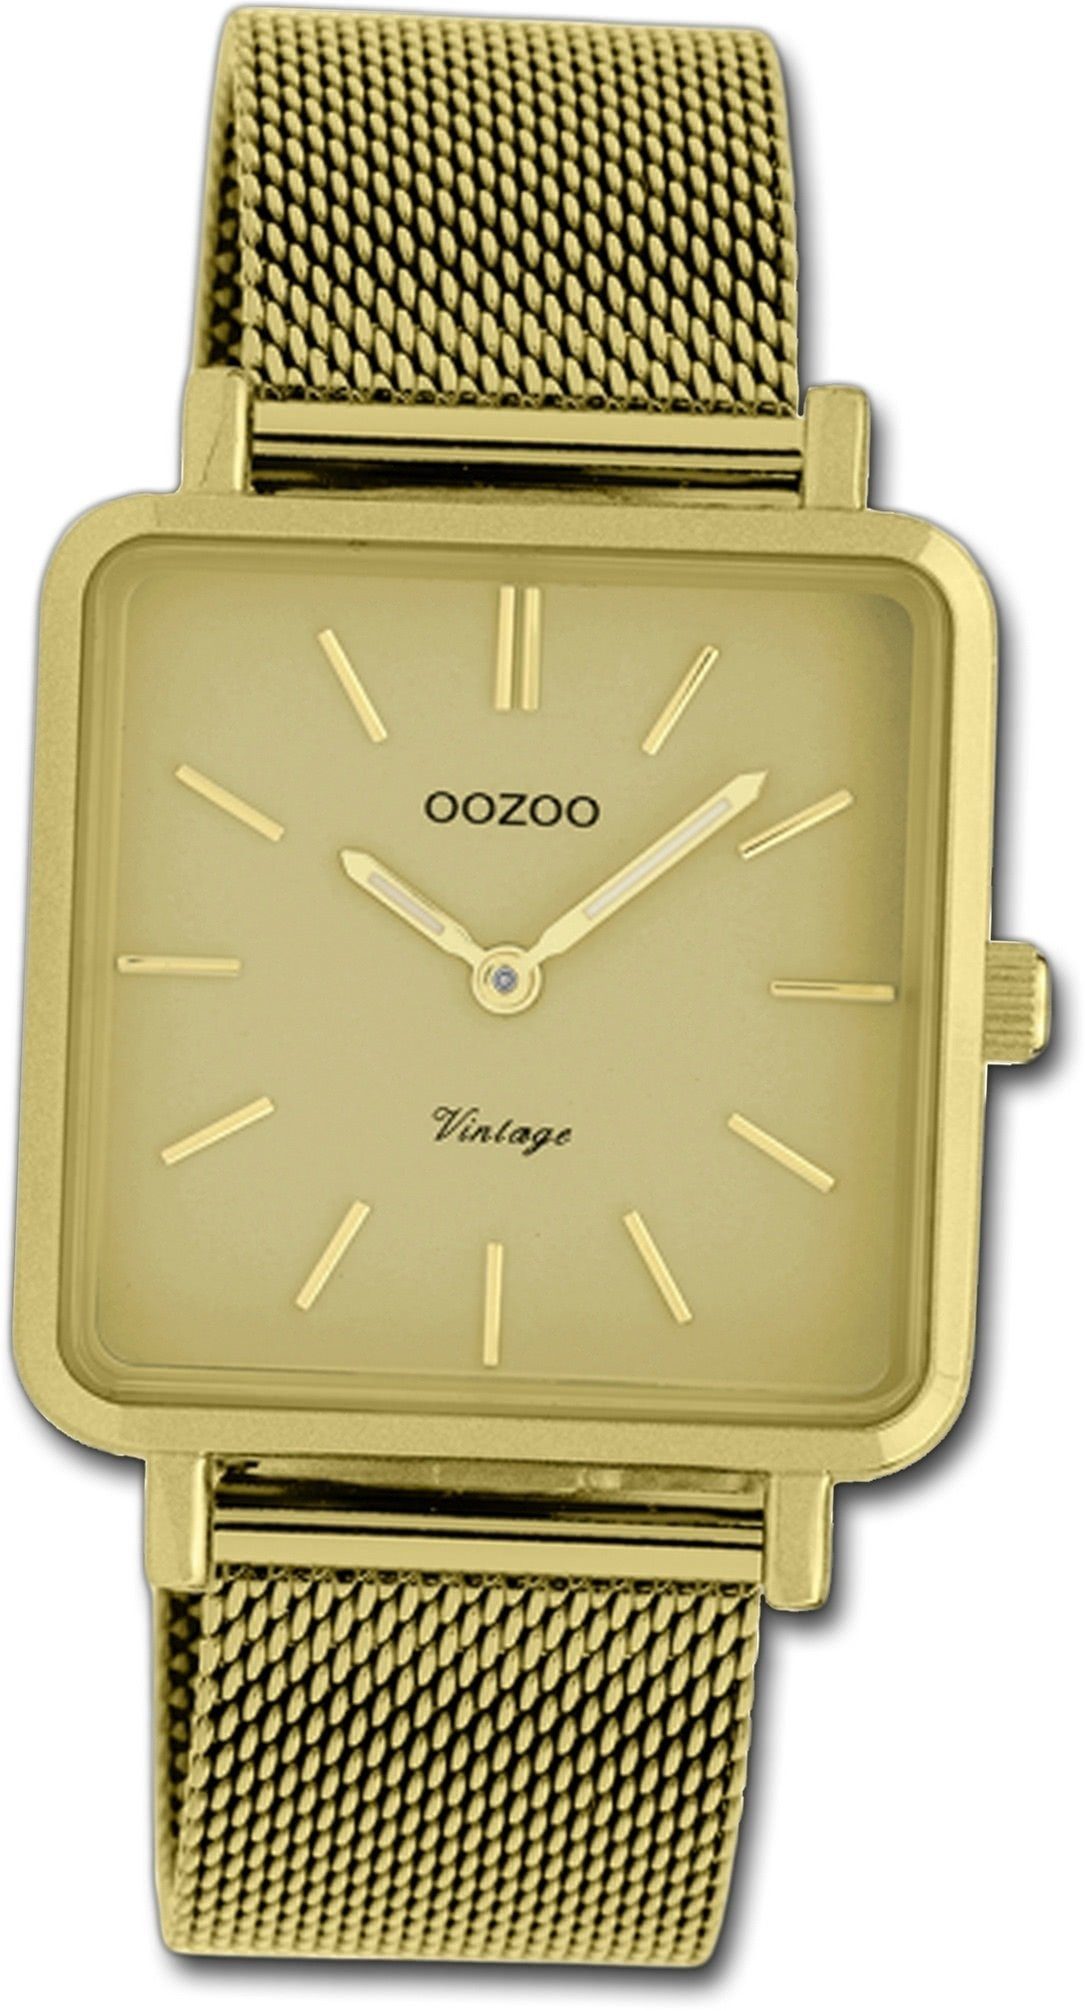 OOZOO Quarzuhr Uhr Oozoo (ca. klein Damenuhr 29mm) Gehäuse, Damen Edelstahlarmband C20010, gold, eckiges Edelstahl